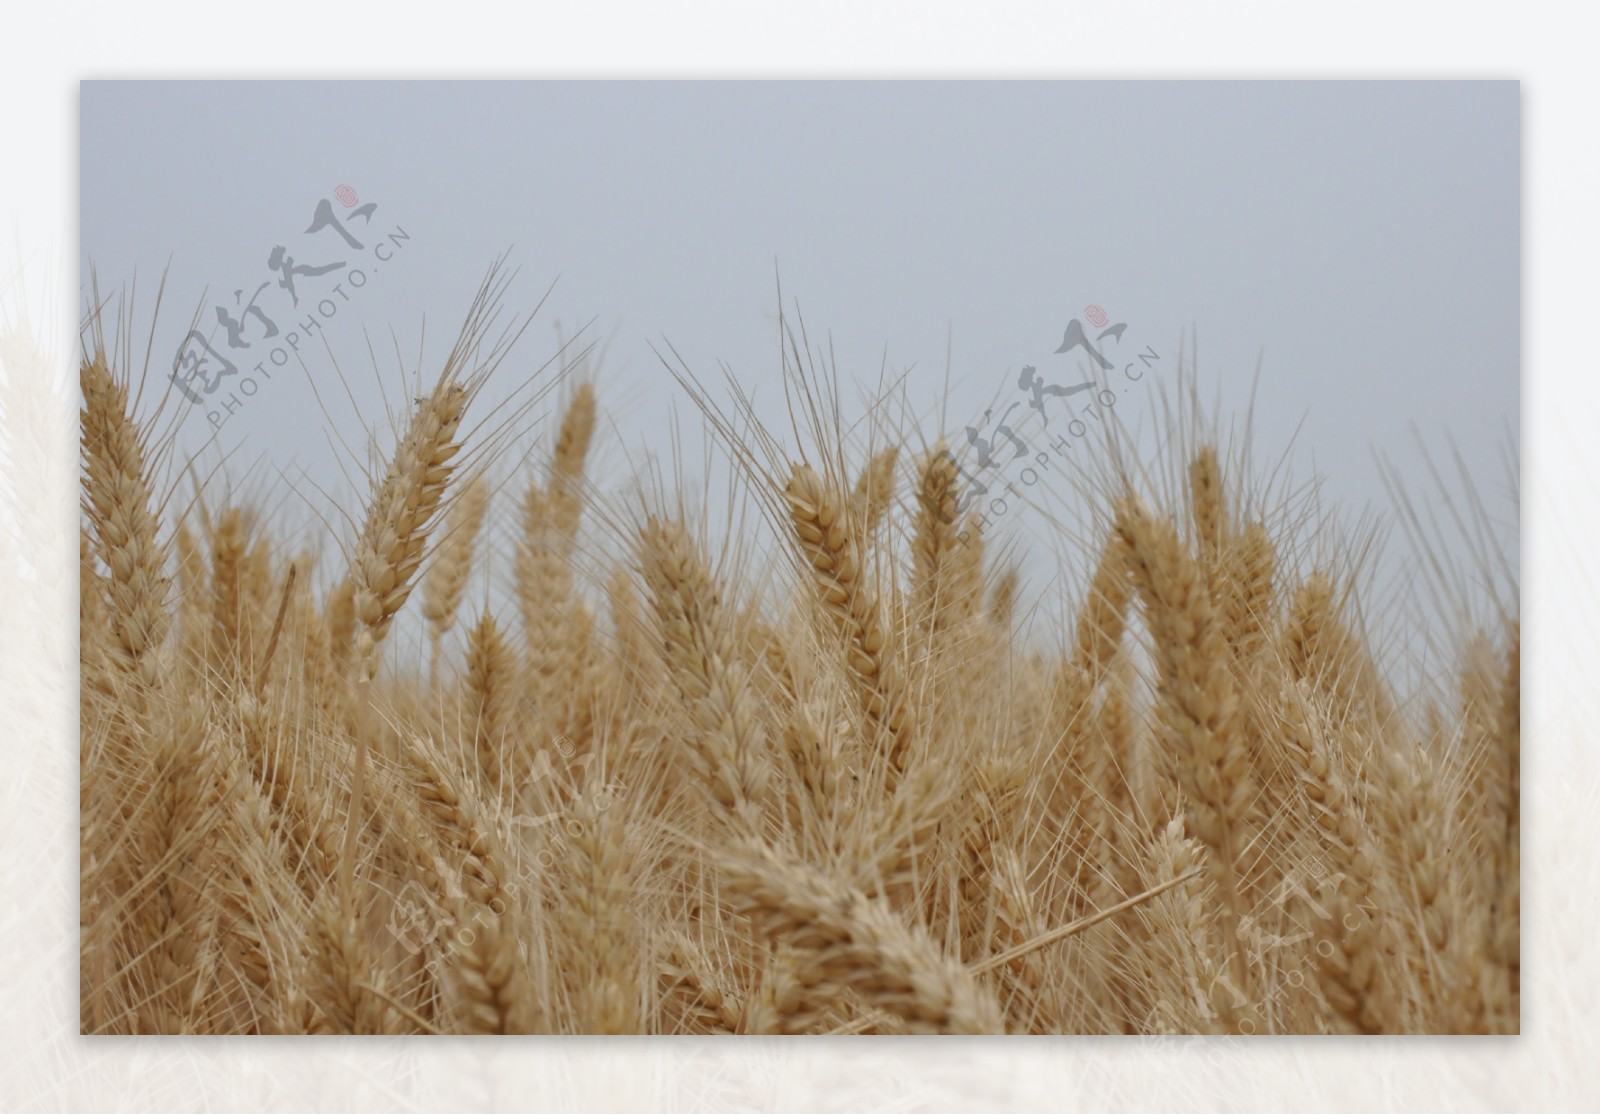 成熟的小麦穗图片